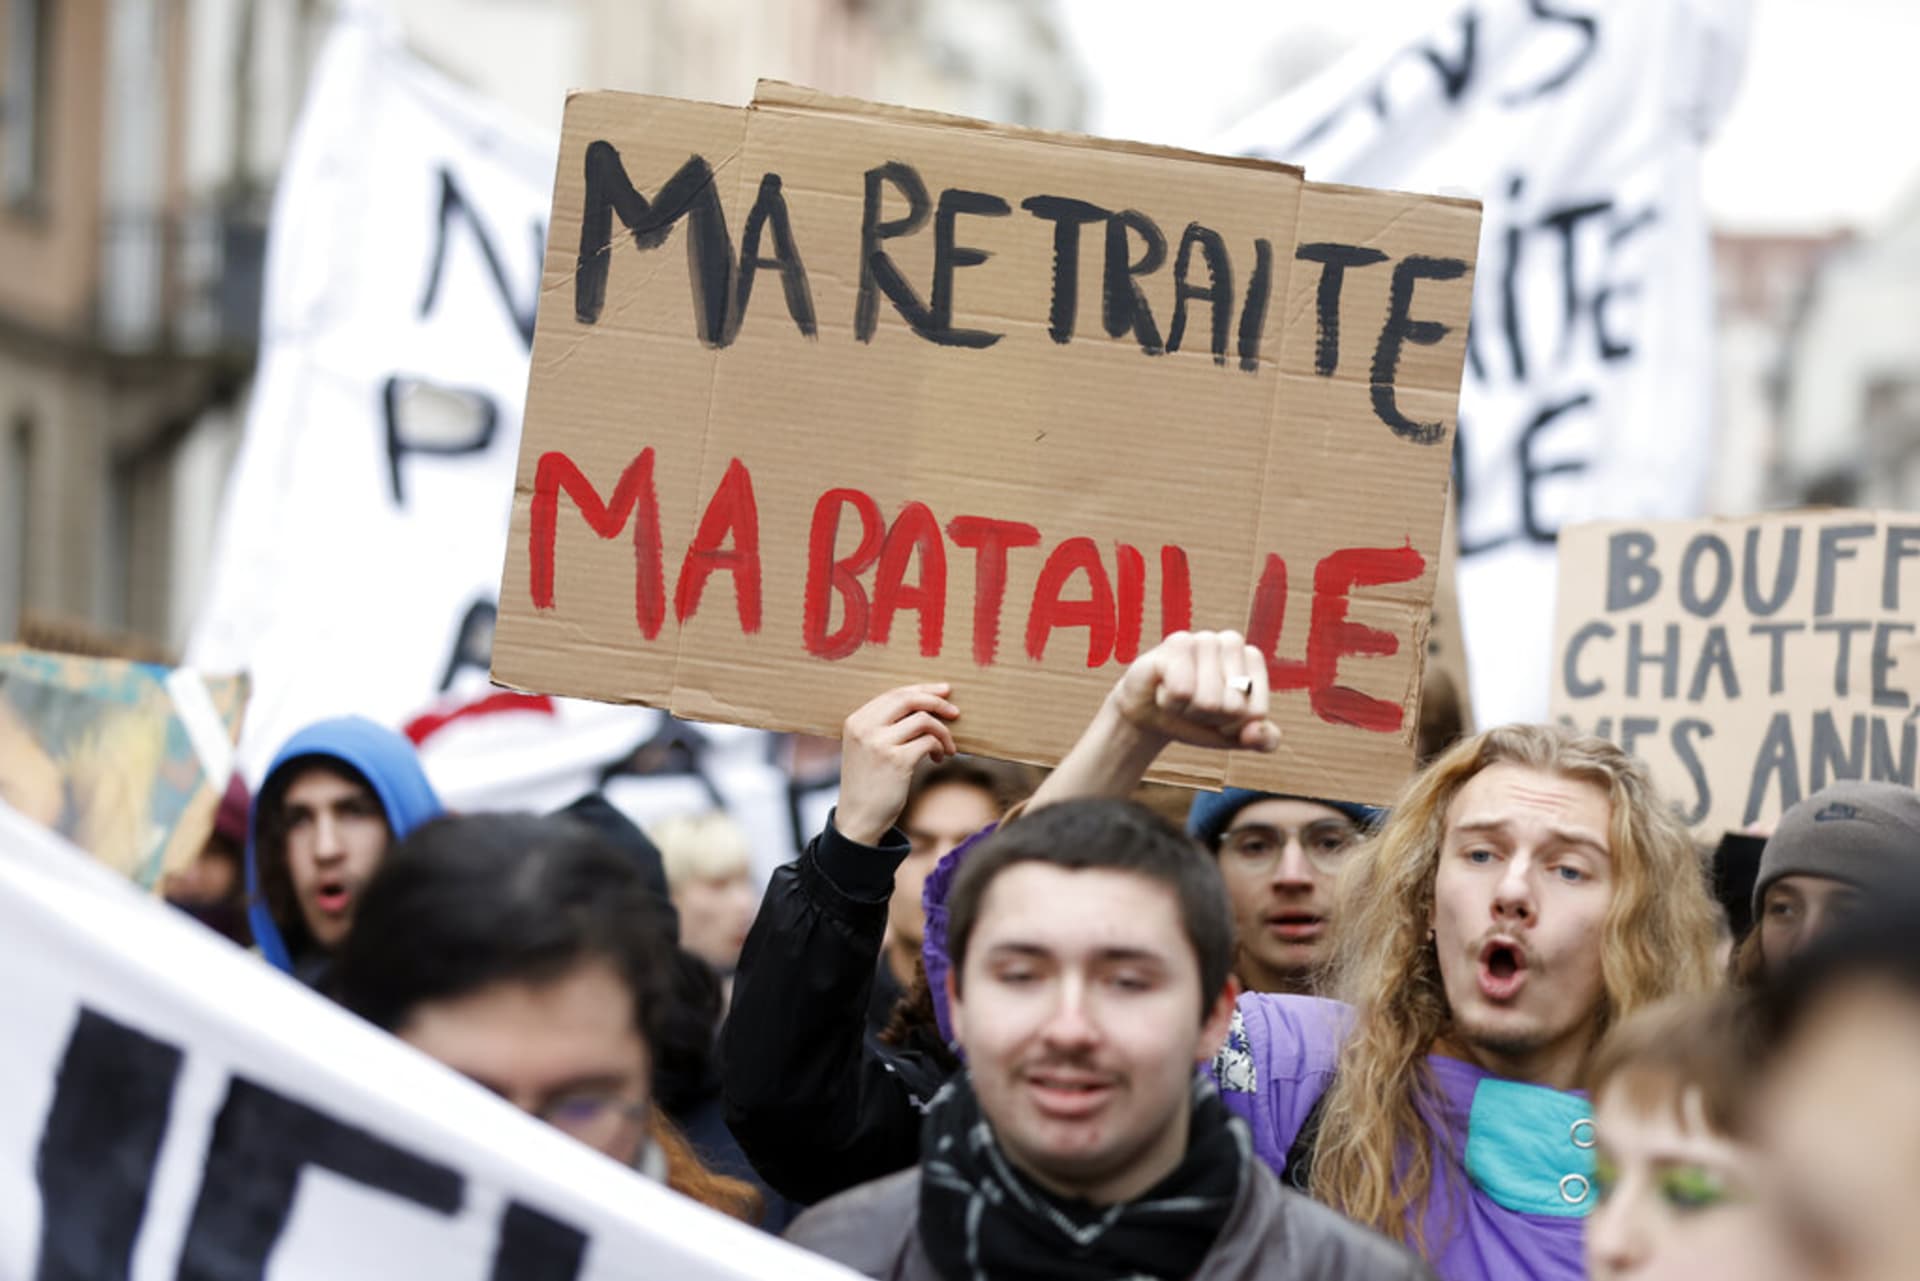 Demonstranti, z nichž jeden drží transparent s nápisem „Můj důchod, můj boj“, se účastní protestního pochodu proti plánům na posunutí věku odchodu do důchodu ve Štrasburku na východě Francie, 31. ledna 2023.